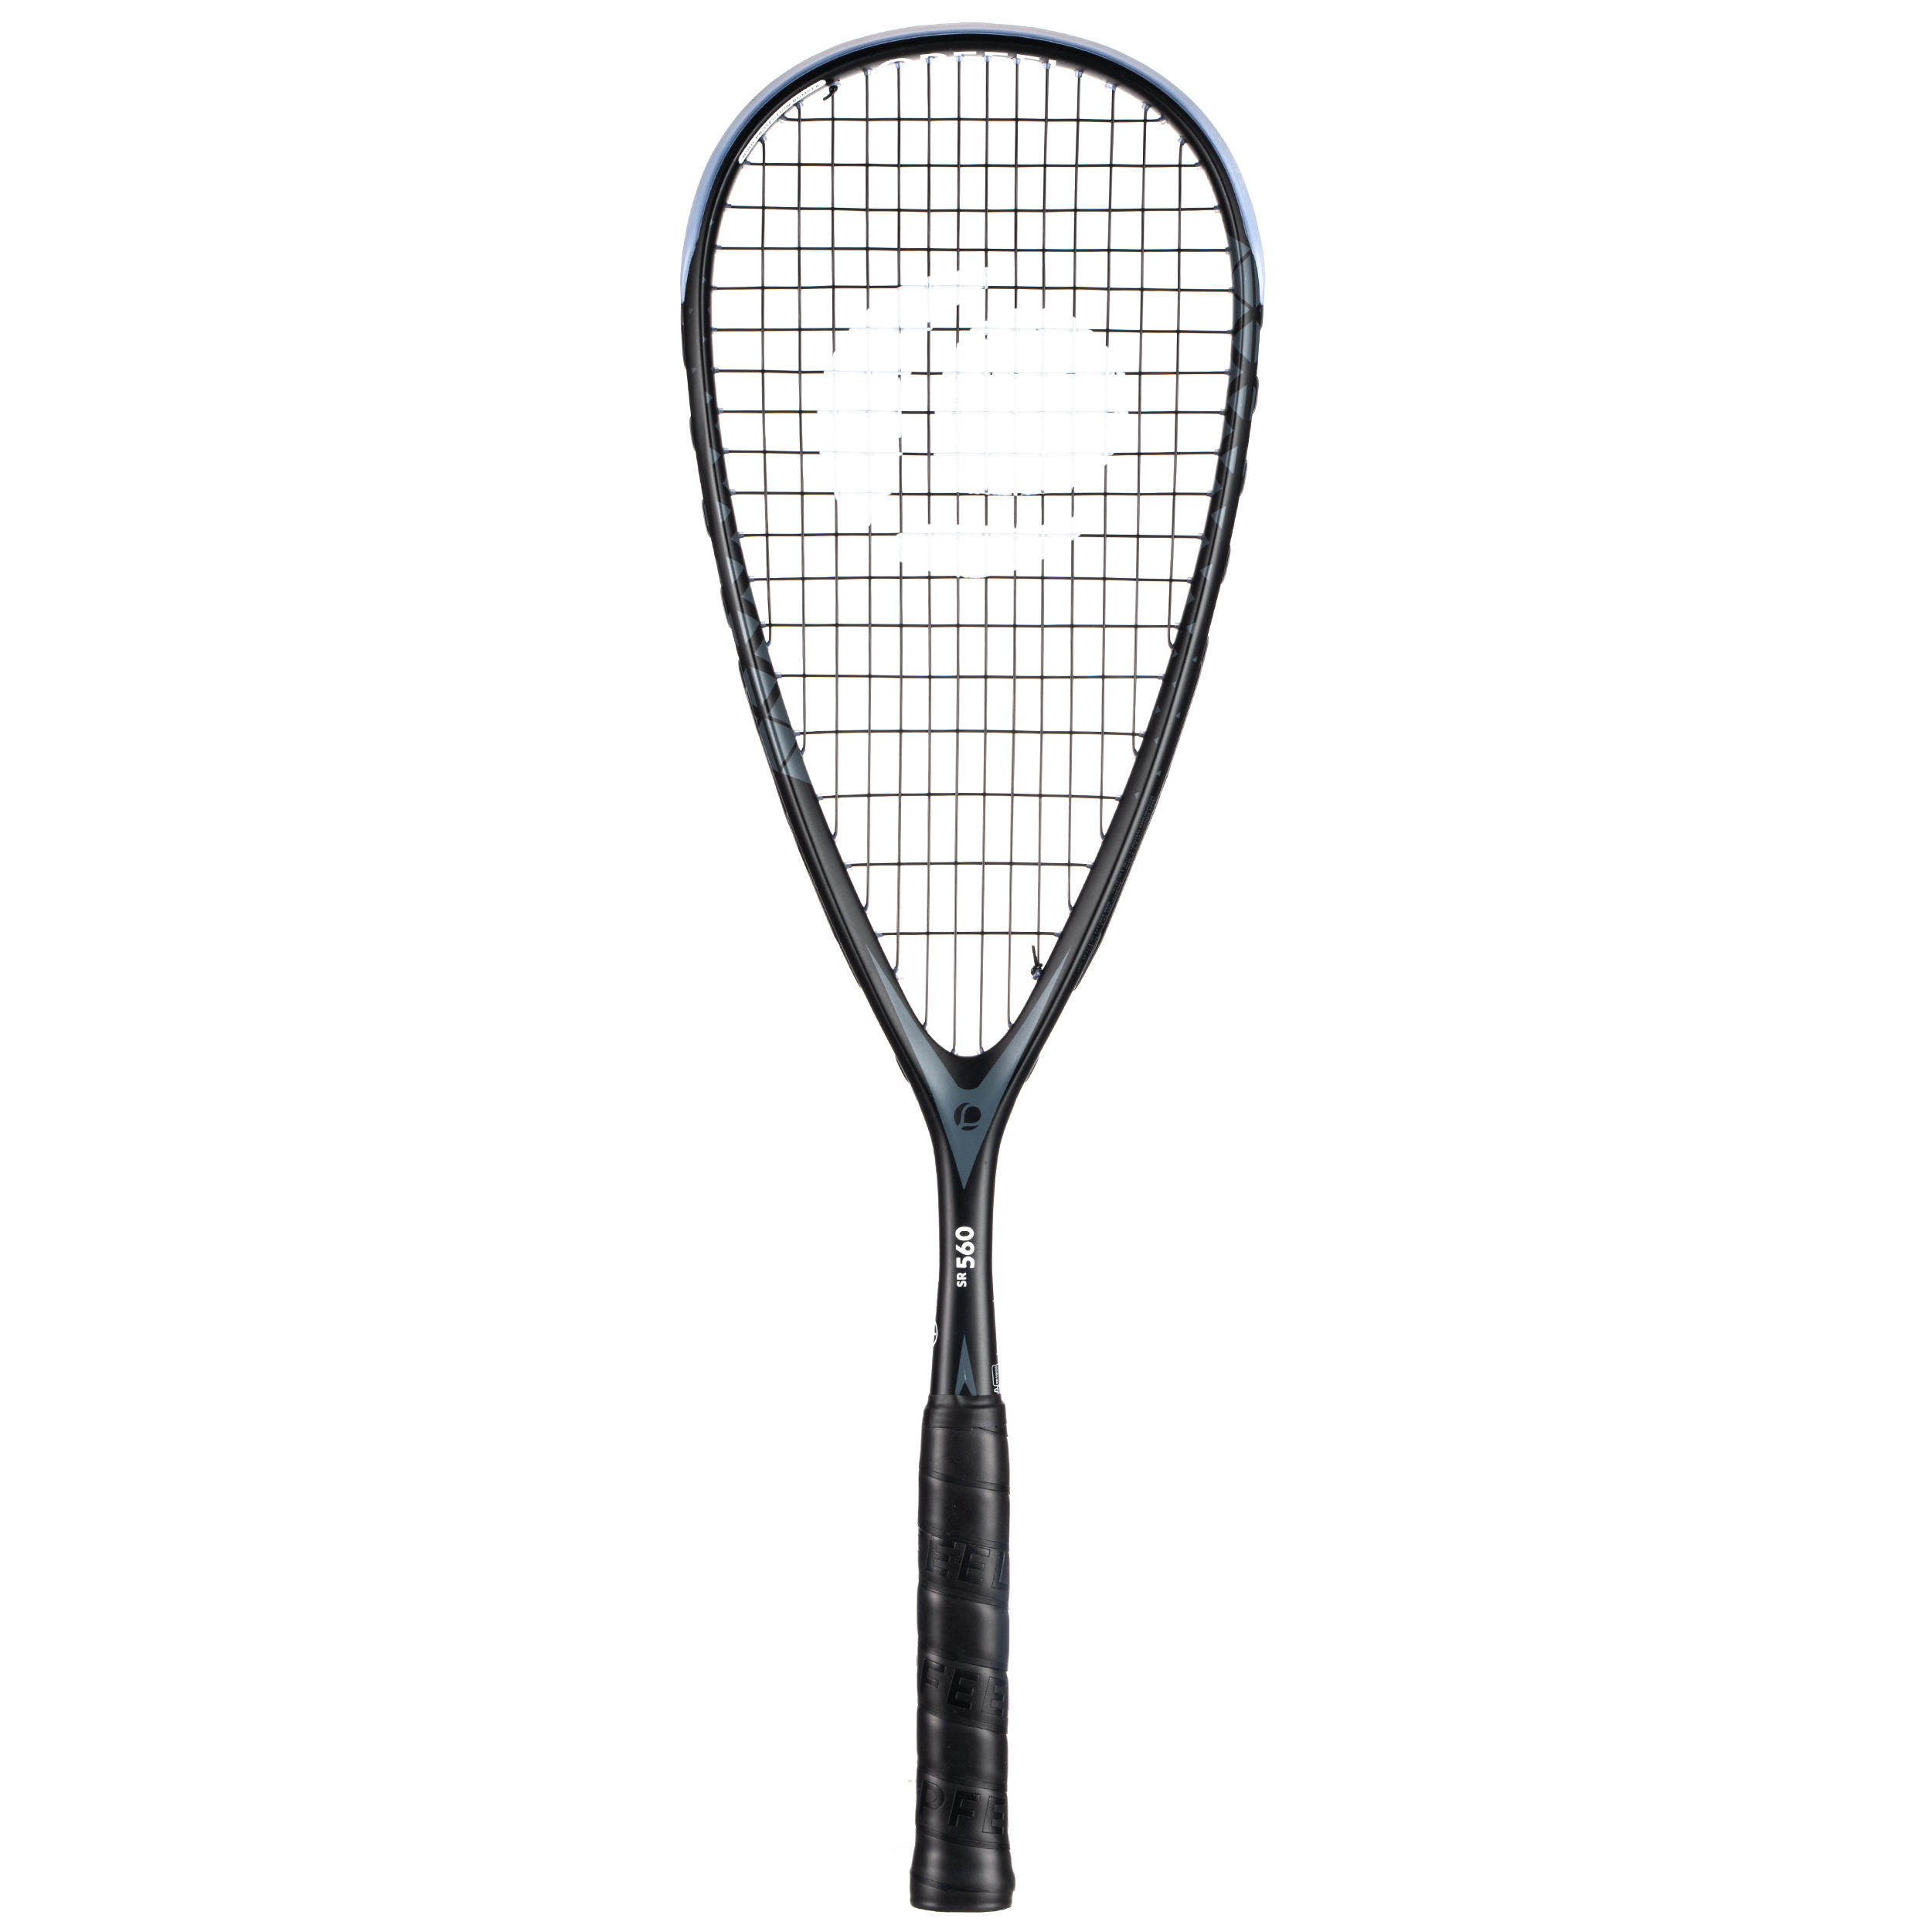 PERFLY SR 560 Squash Racket - 145g